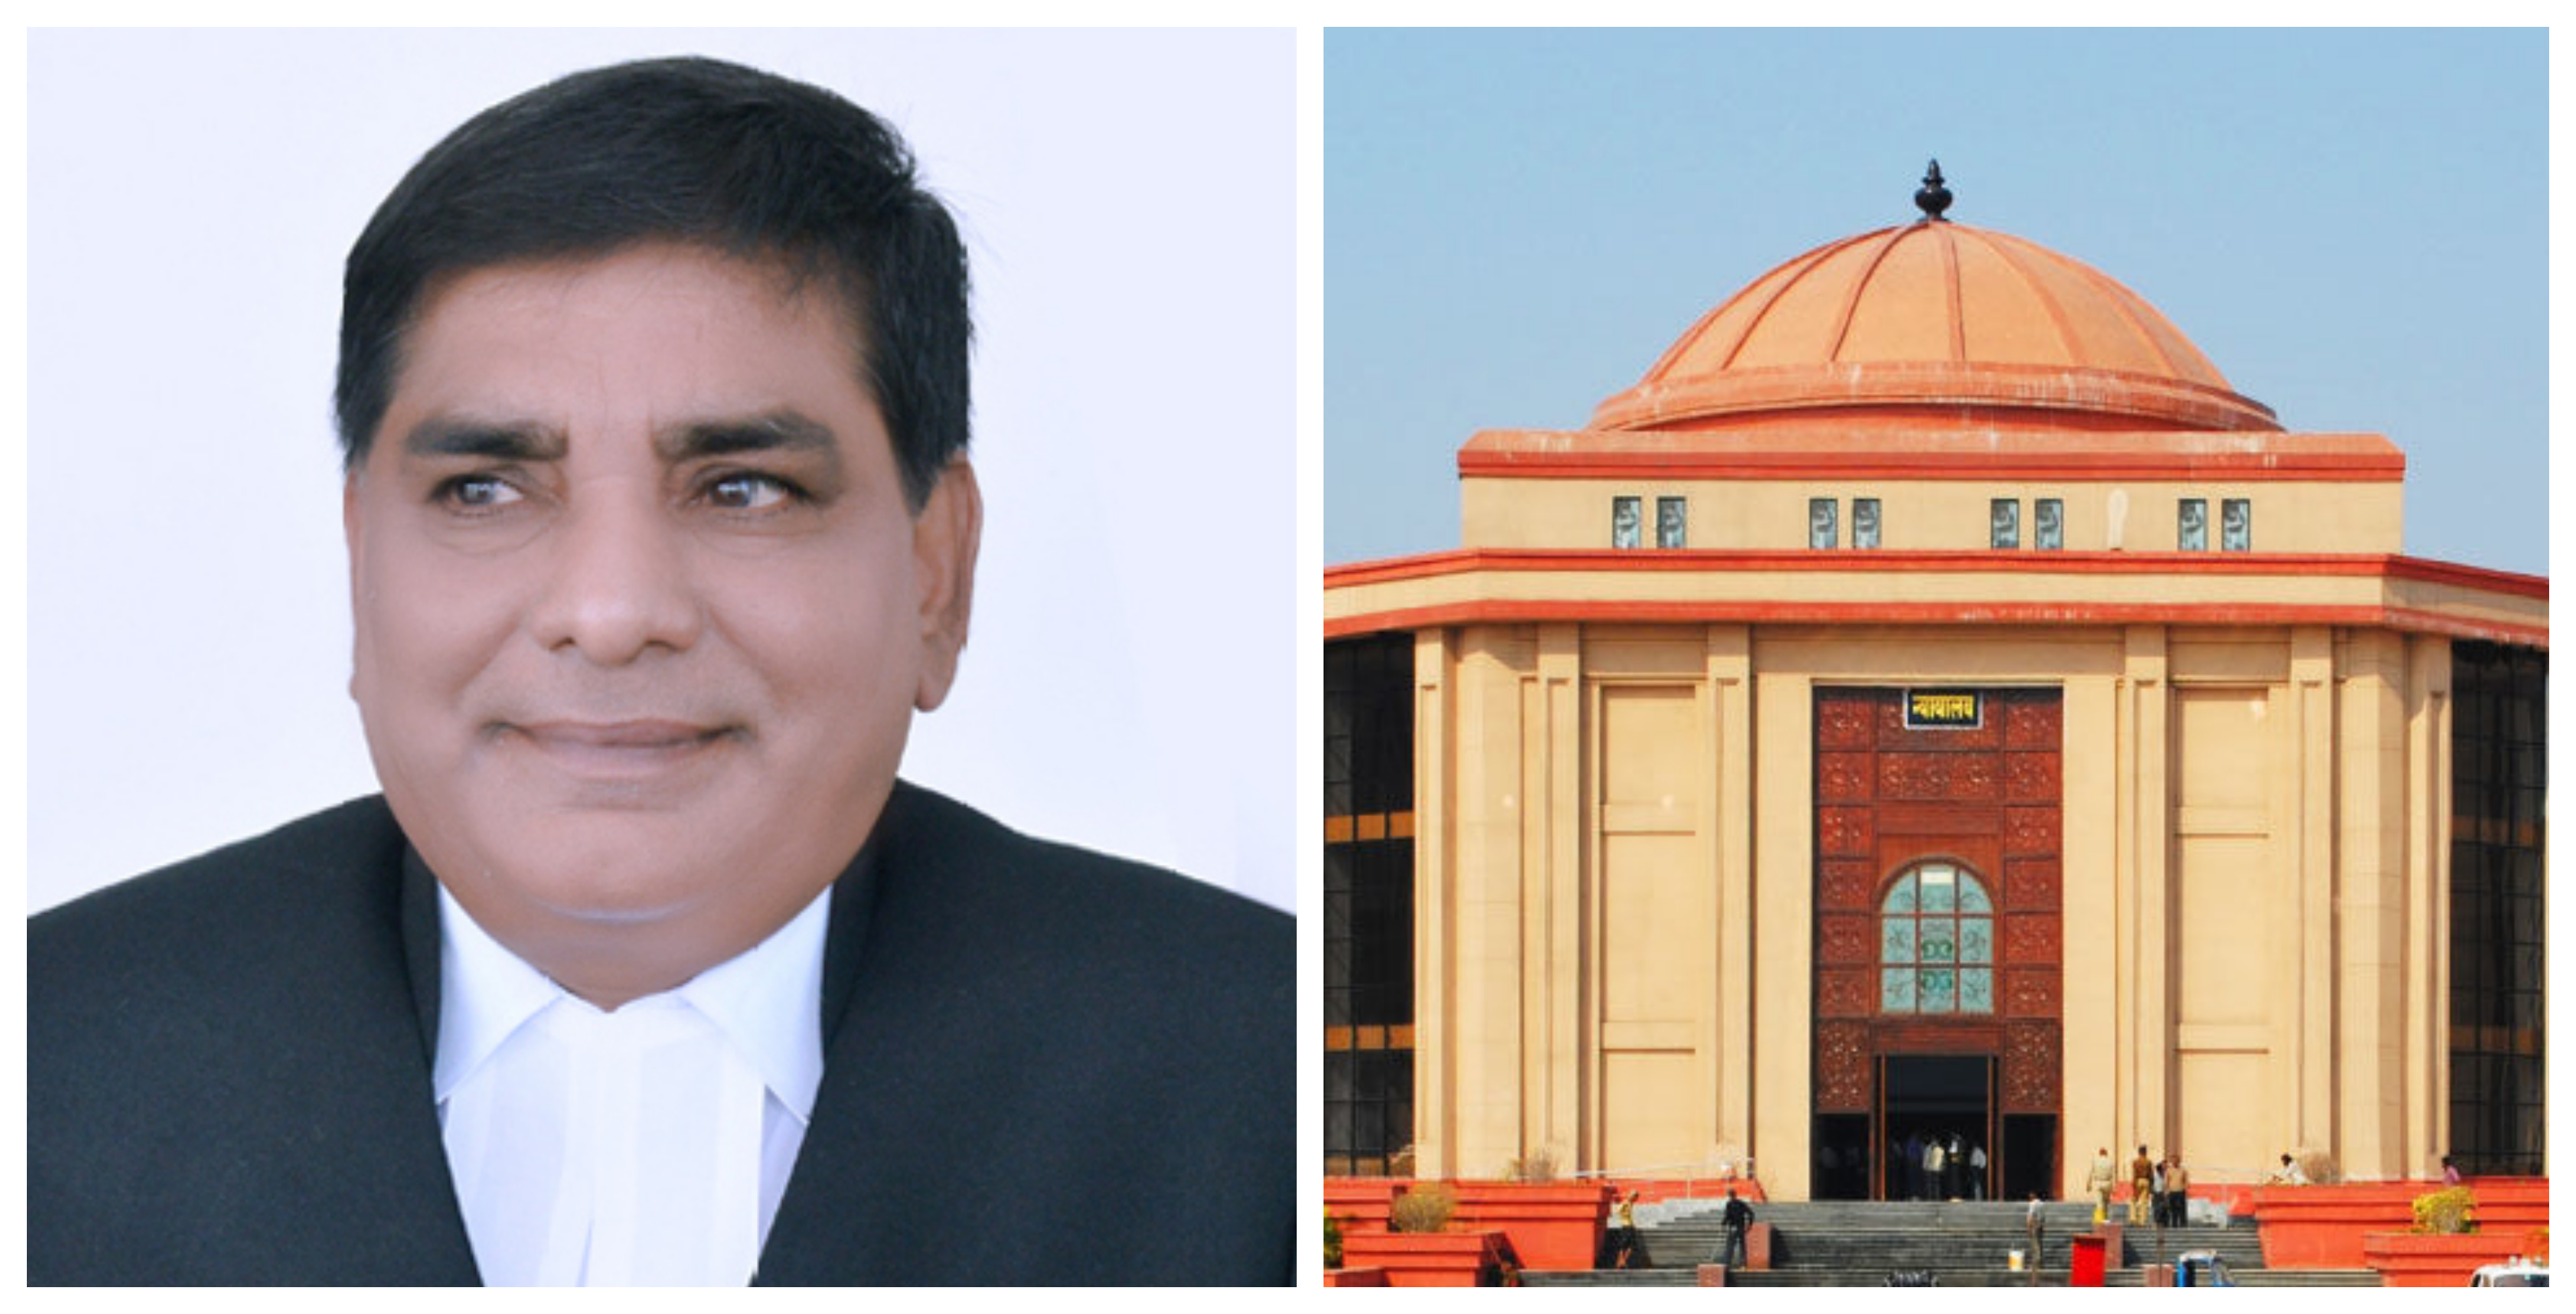 छत्तीसगढ़ उच्च न्यायालय के न्यायमूर्ति शरद कुमार गुप्ता ने राज्य सरकार के नए कार्यभार को लेने के लिए अपना इस्तीफा दिया